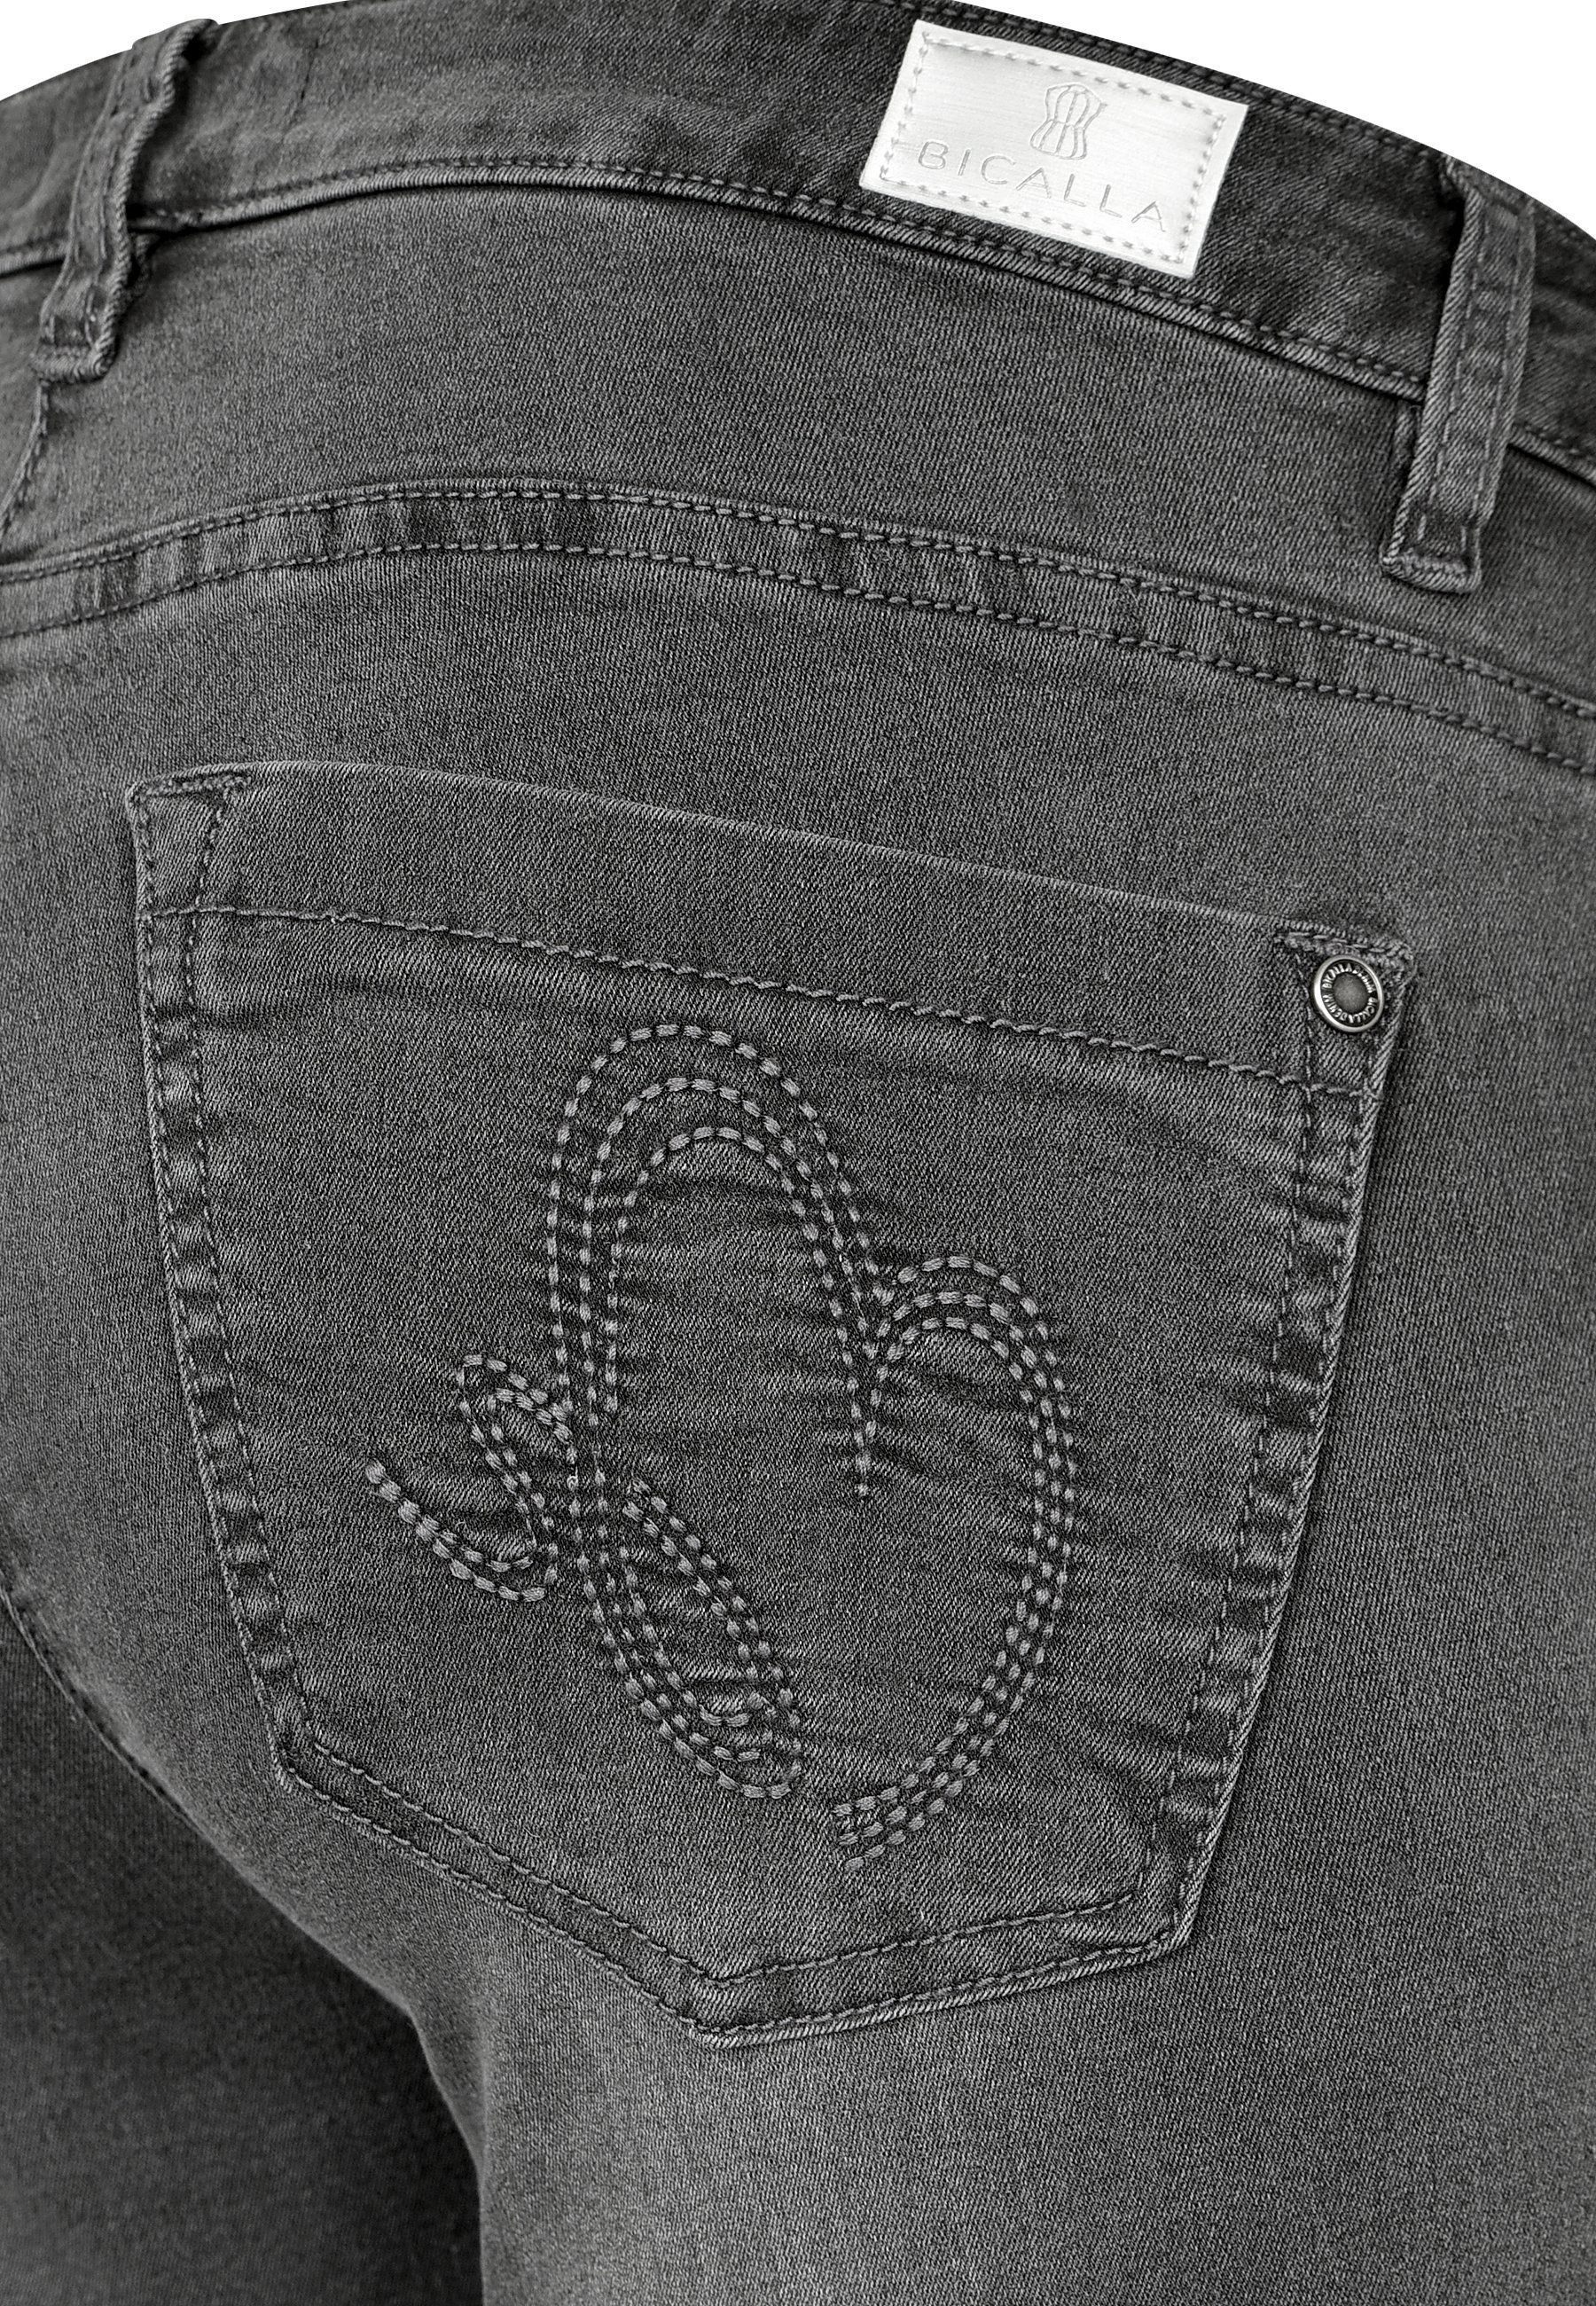 BICALLA Regular-fit-Jeans (1-tlg) washed - Pockets 06/anthra 30 5